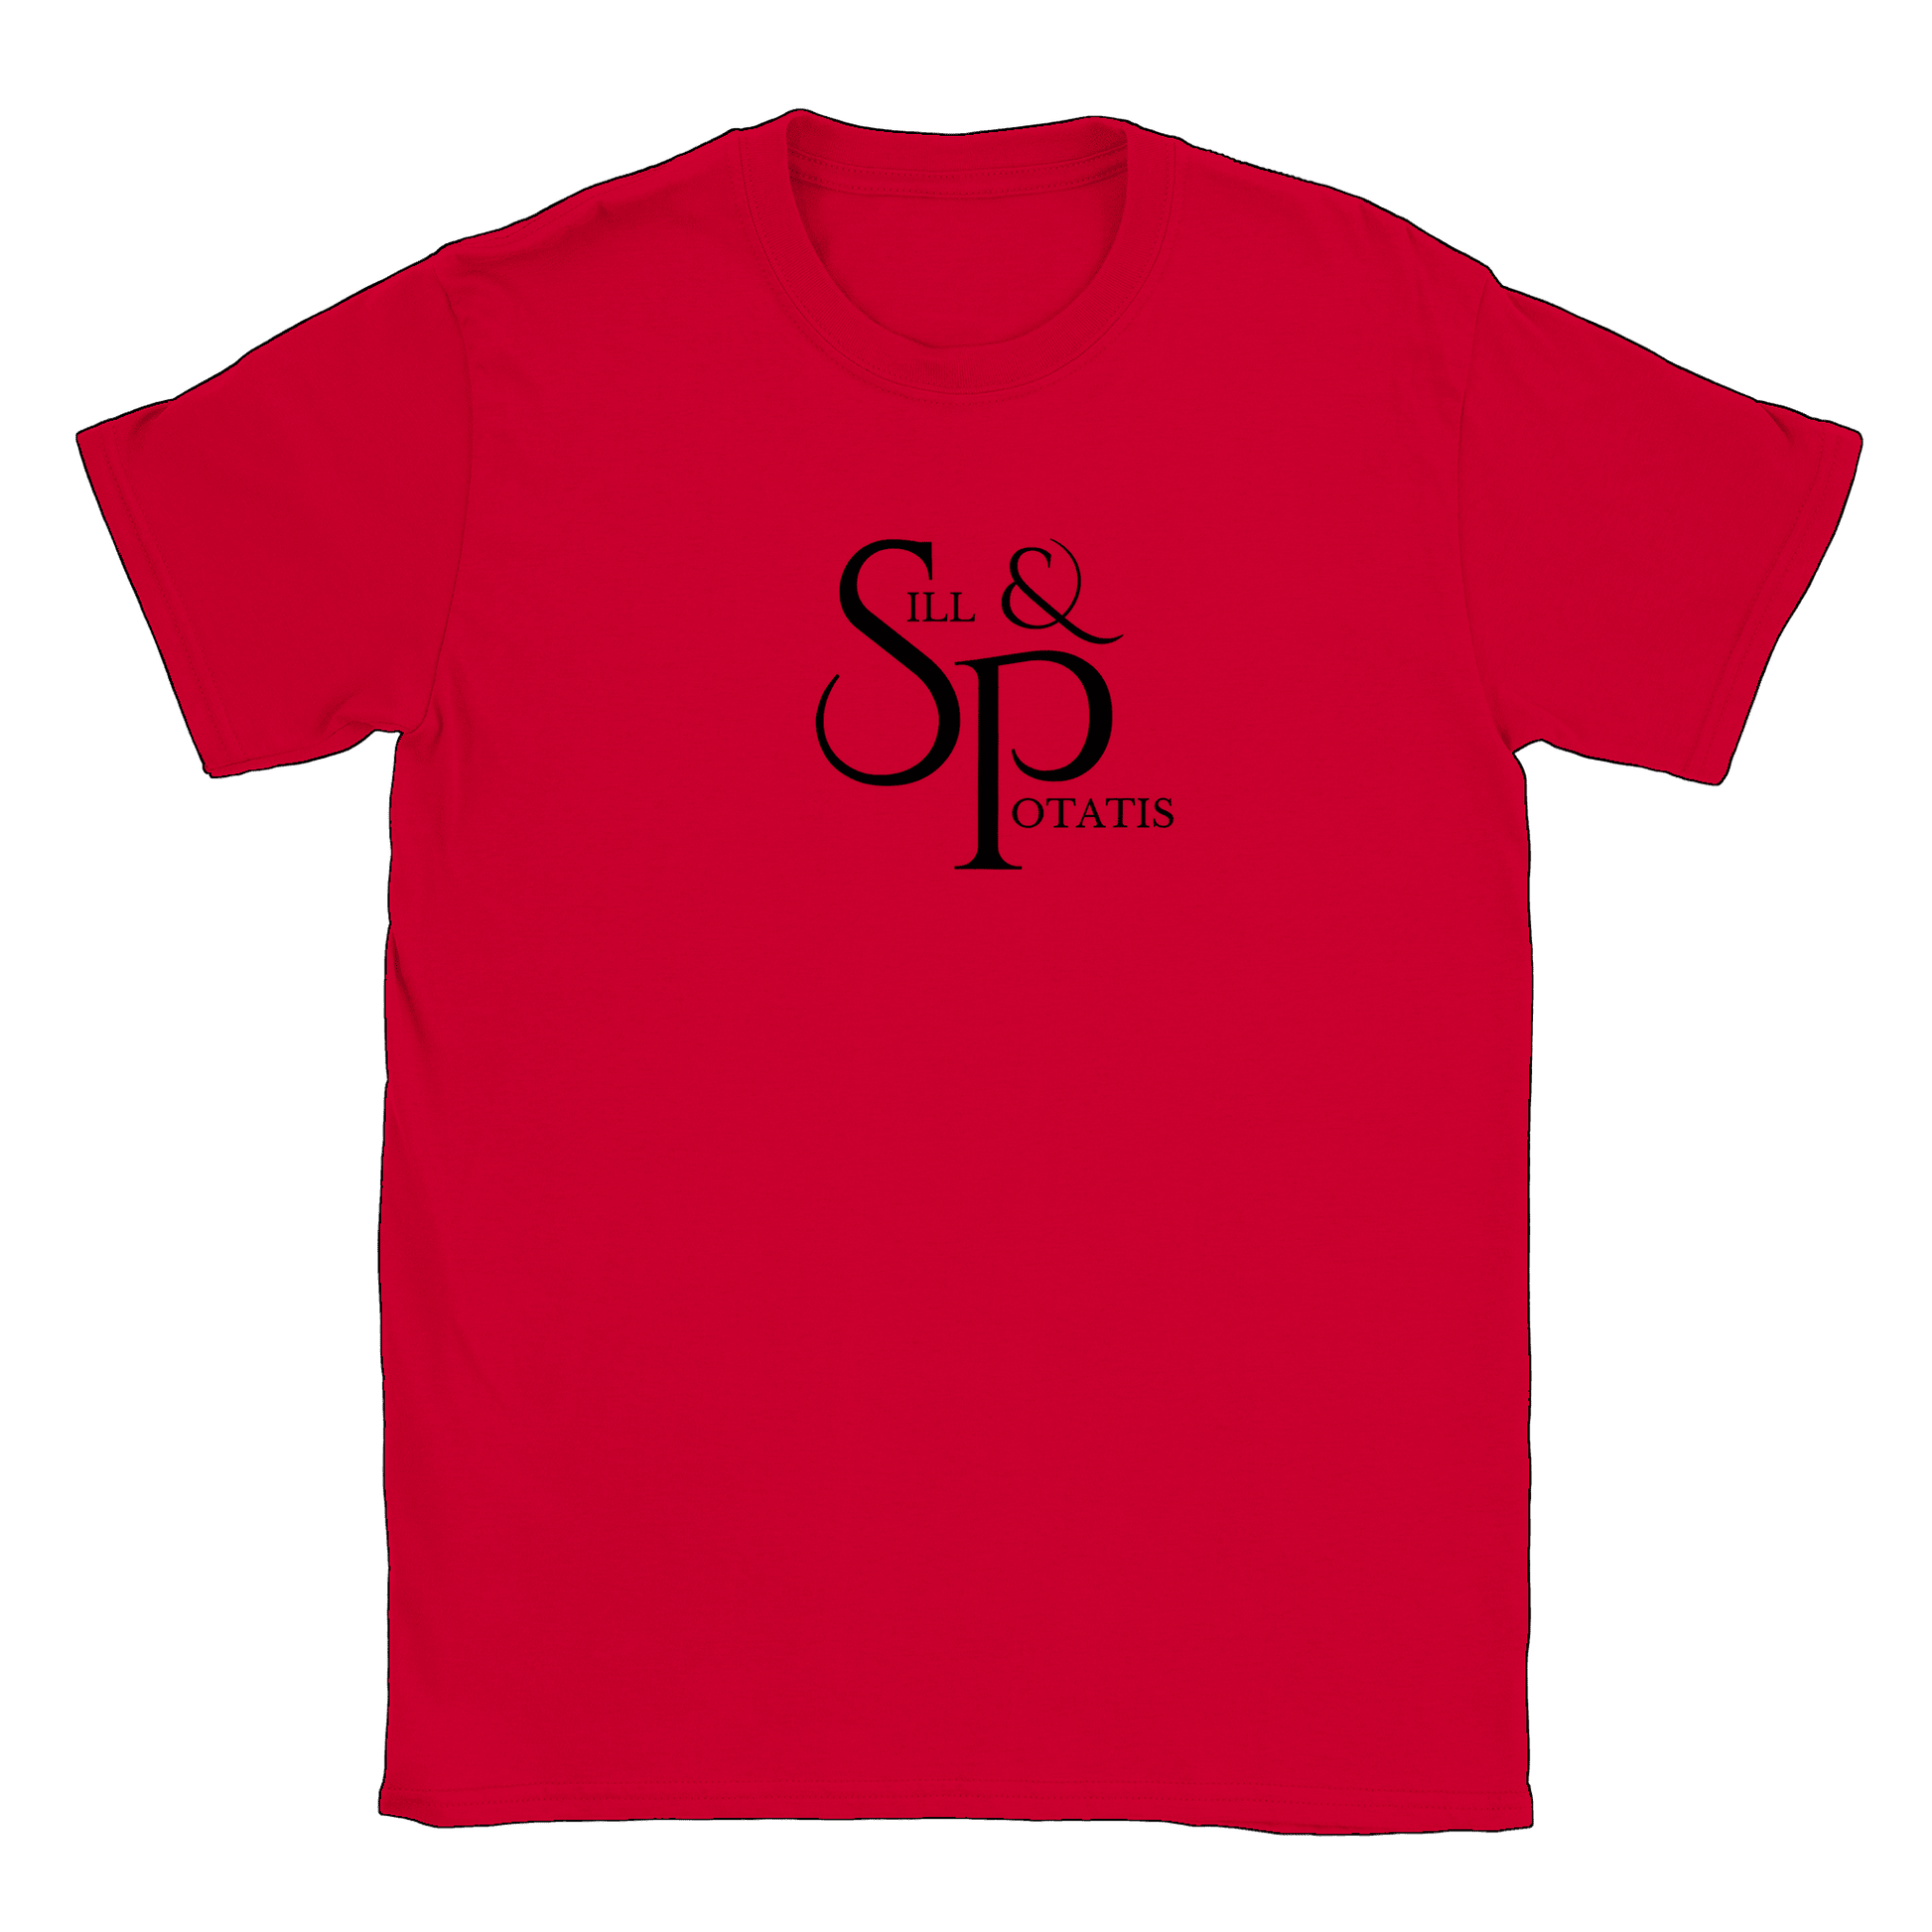 Sill och Potatis - T-shirt Röd